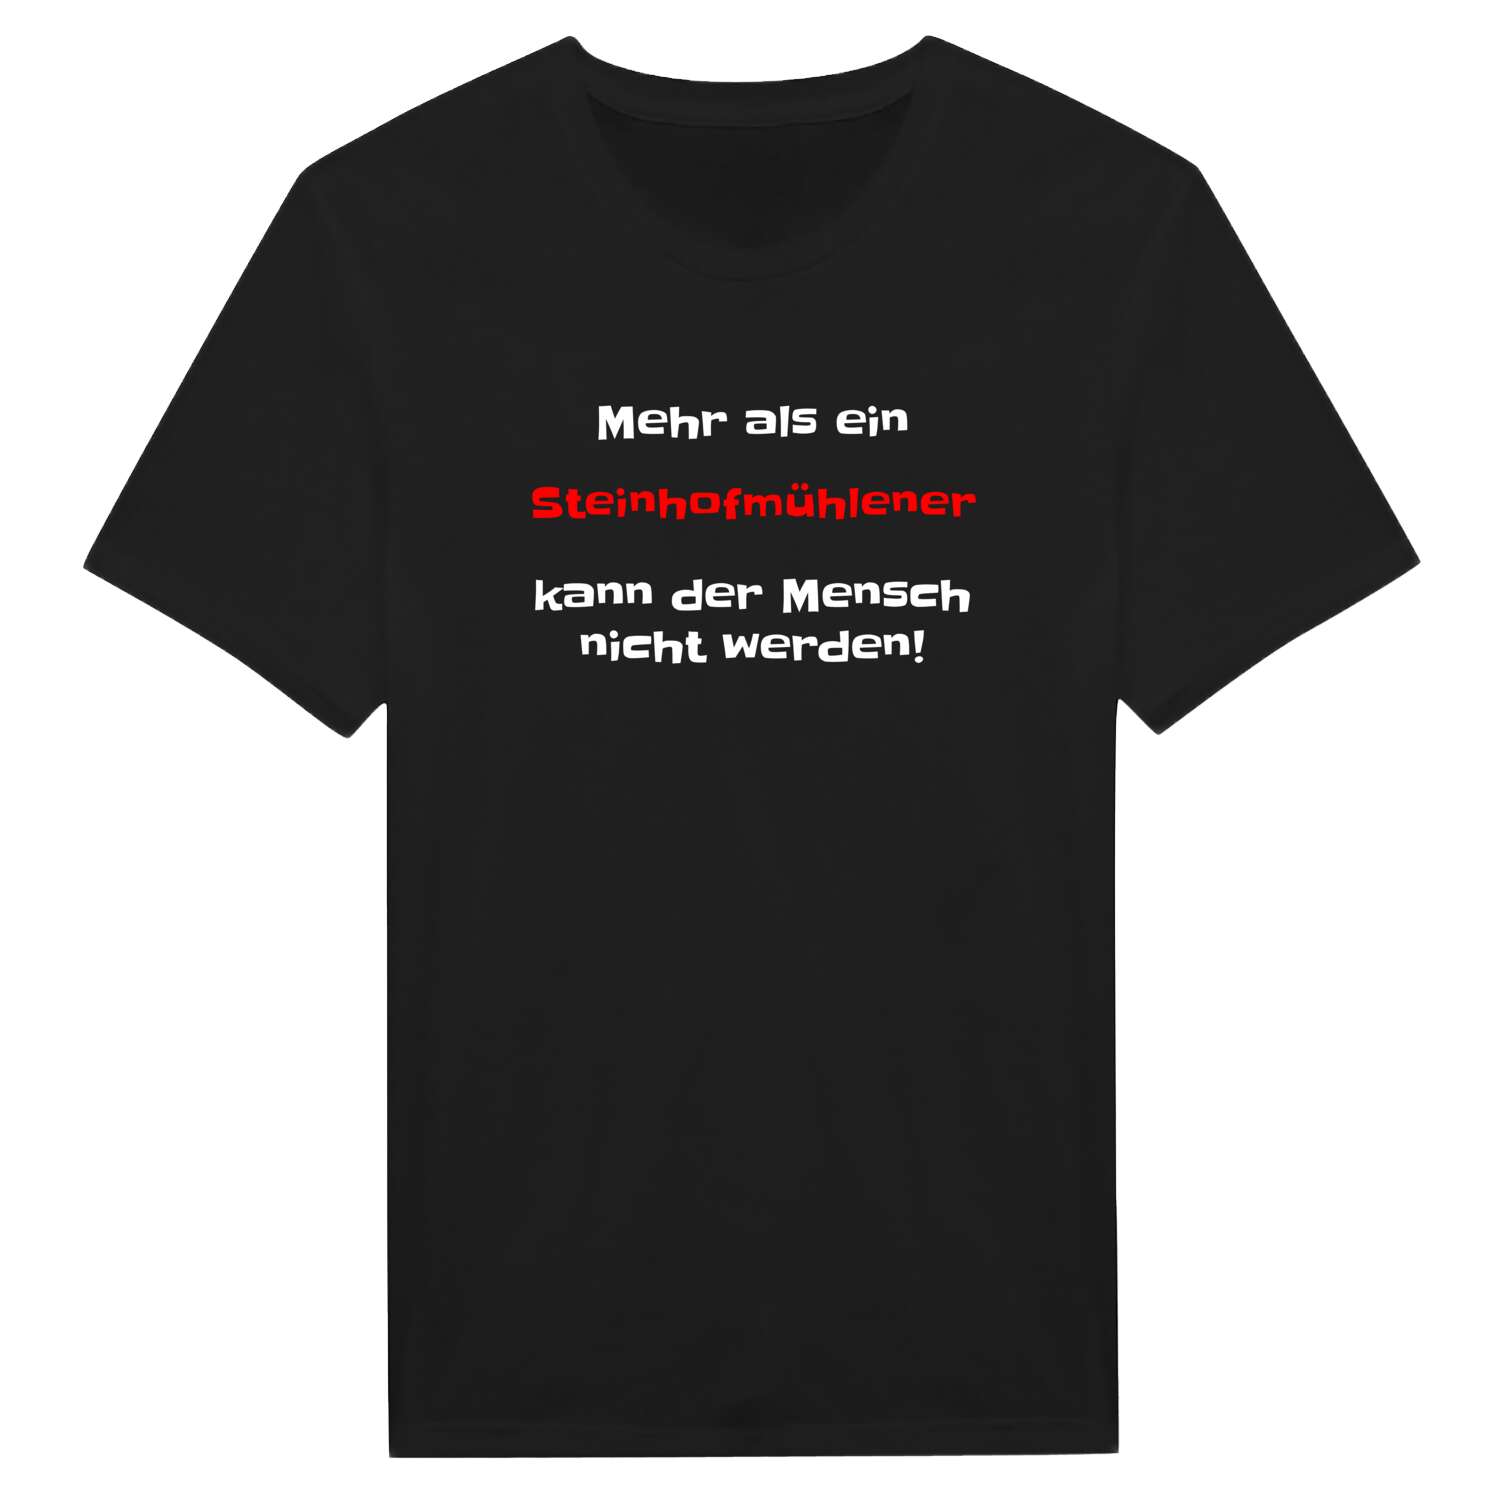 Steinhofmühle T-Shirt »Mehr als ein«